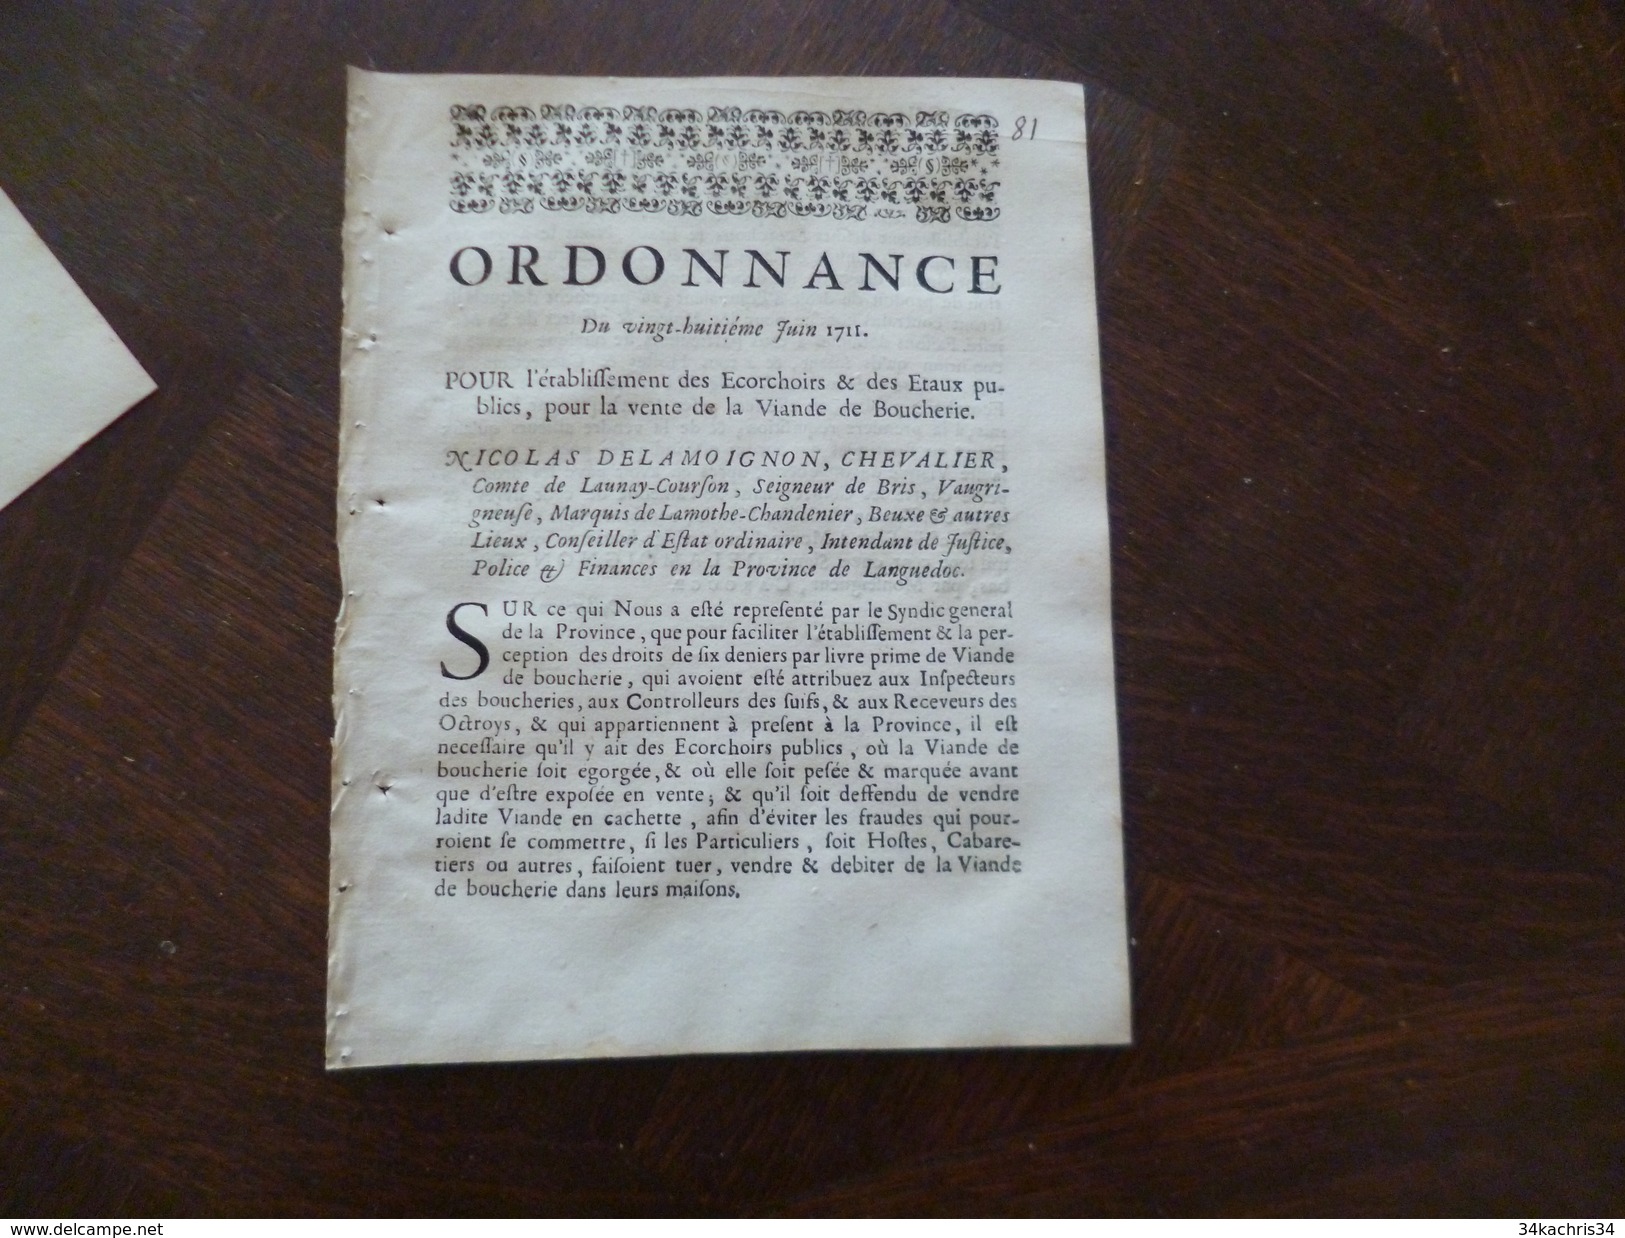 Boucherie Viande 8 décrets, arrest, bail  de loi entre 1711 et 1712 A saisir